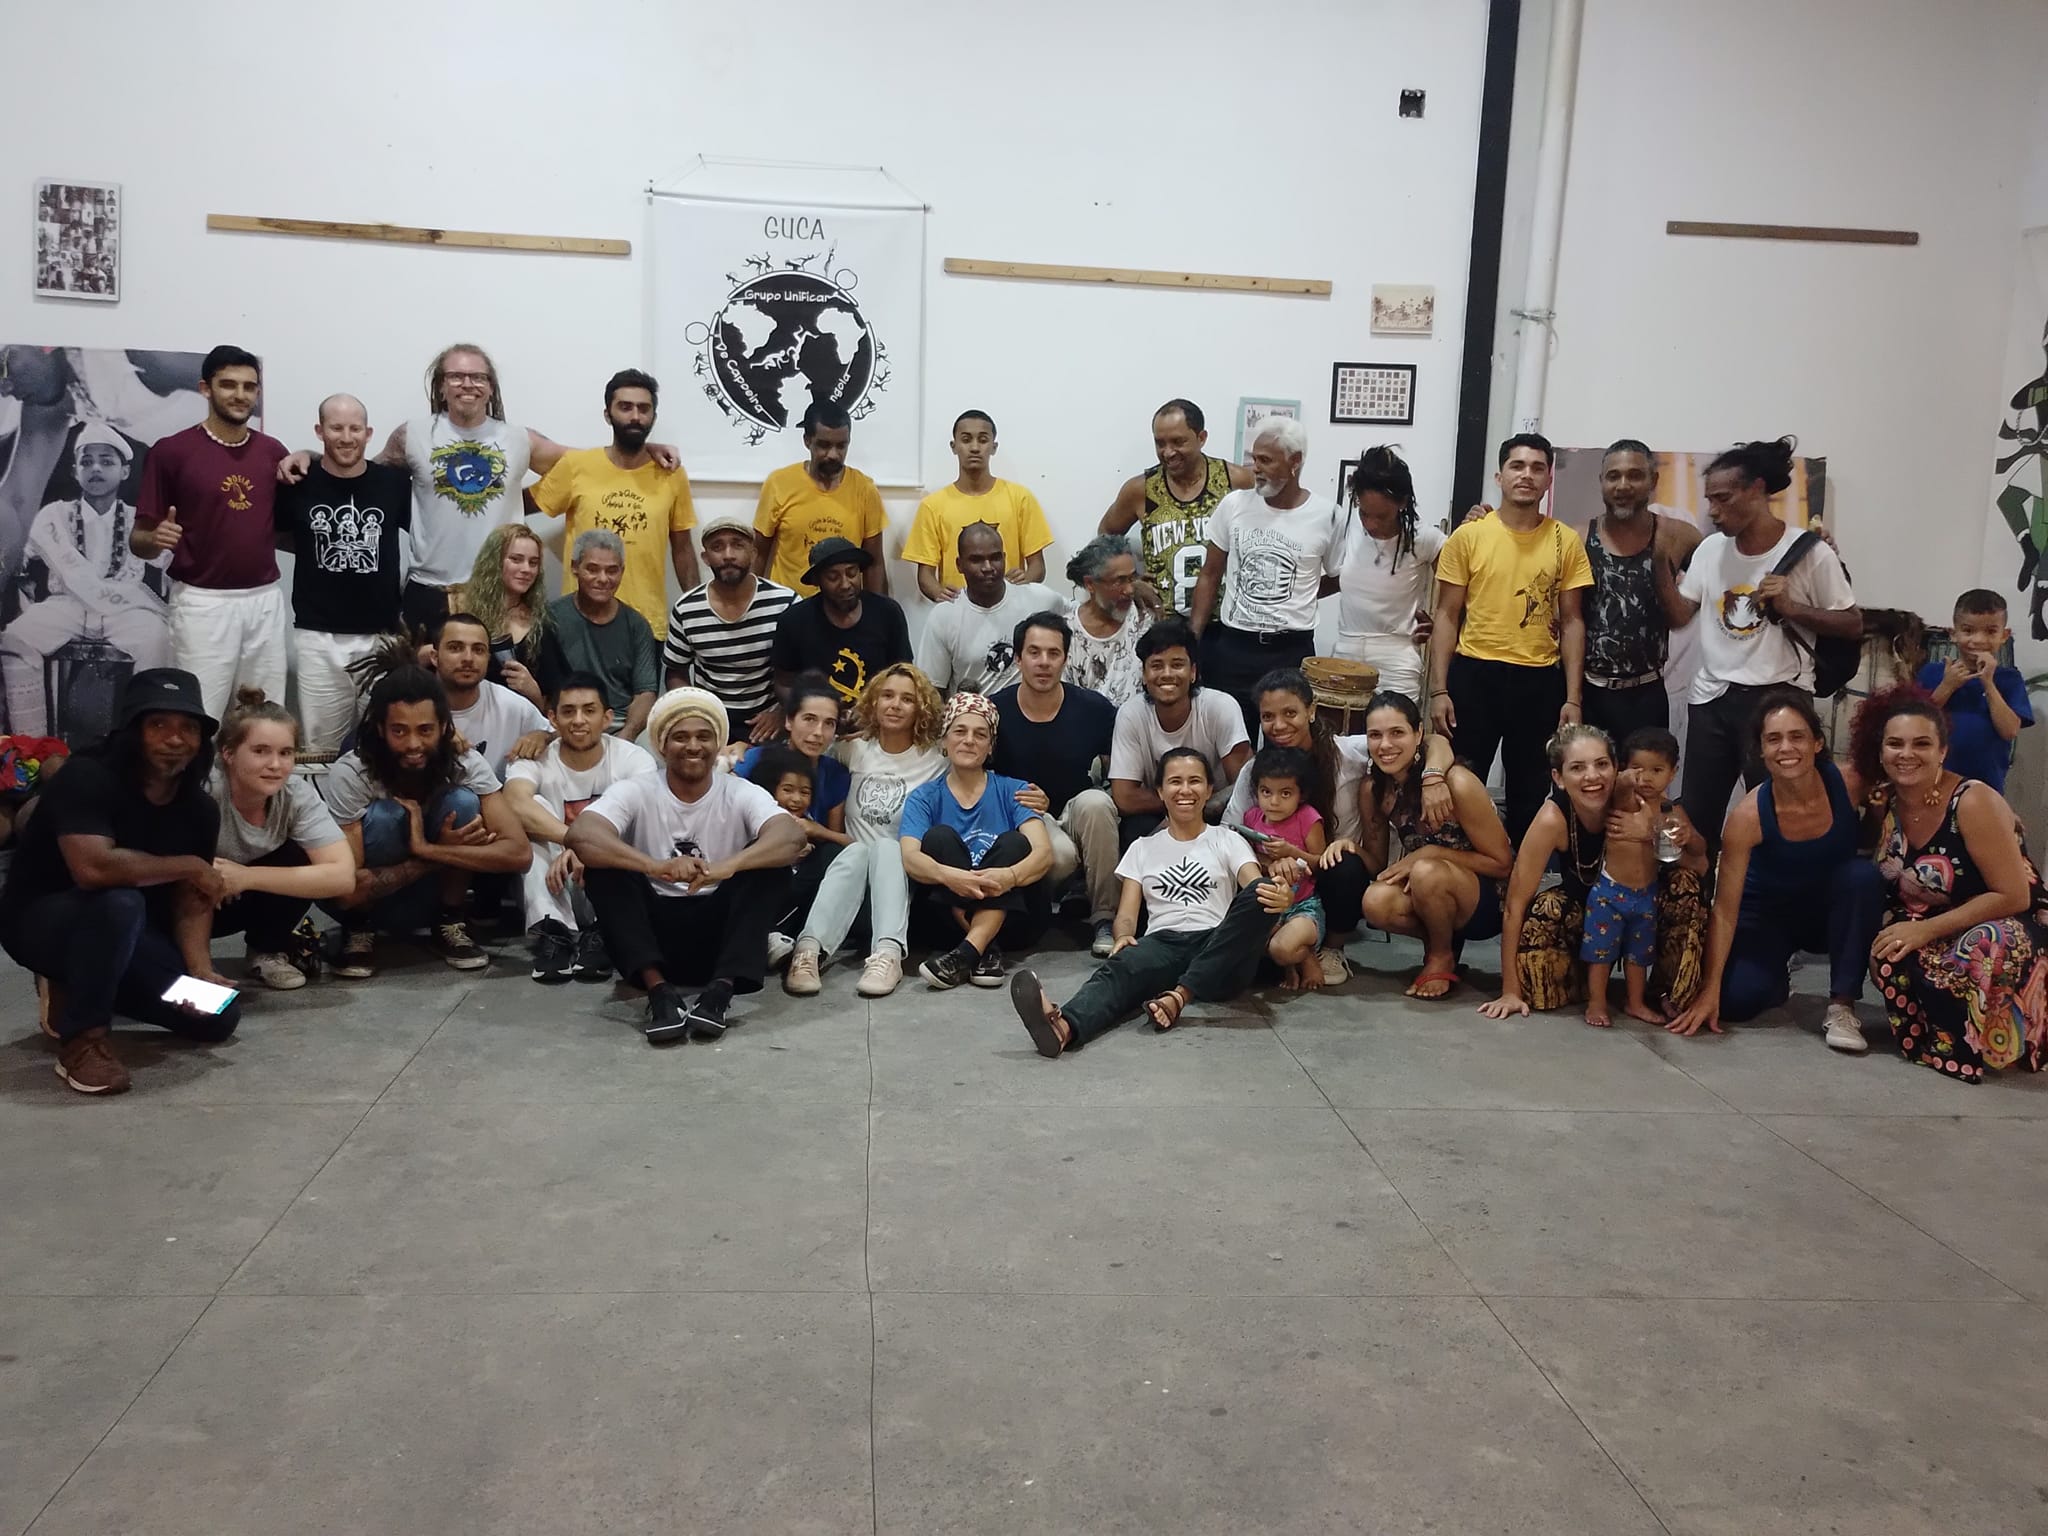 GUCA, Grupo de Capoeira Angola Unificar.